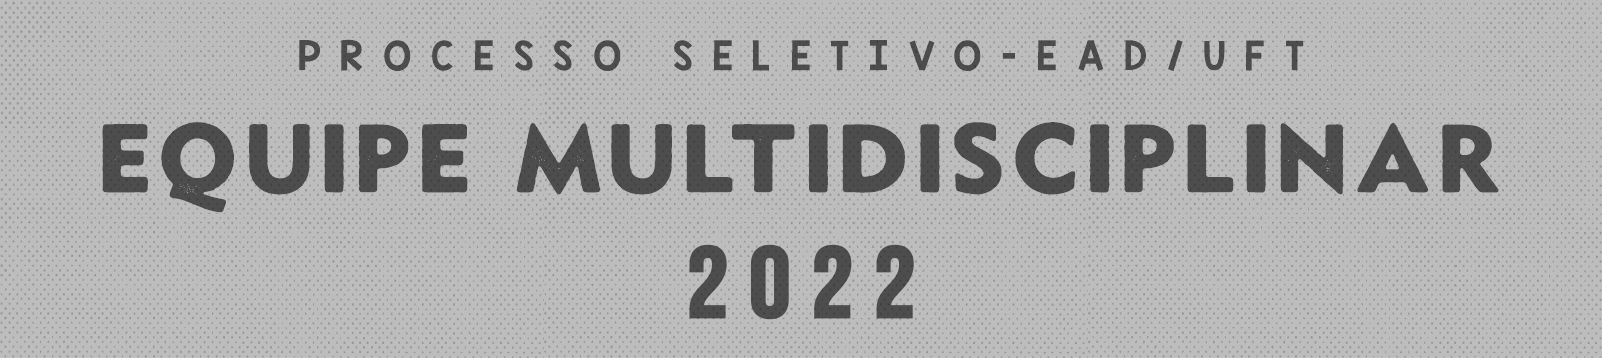 Equipe Multidisciplinar UAB 2022